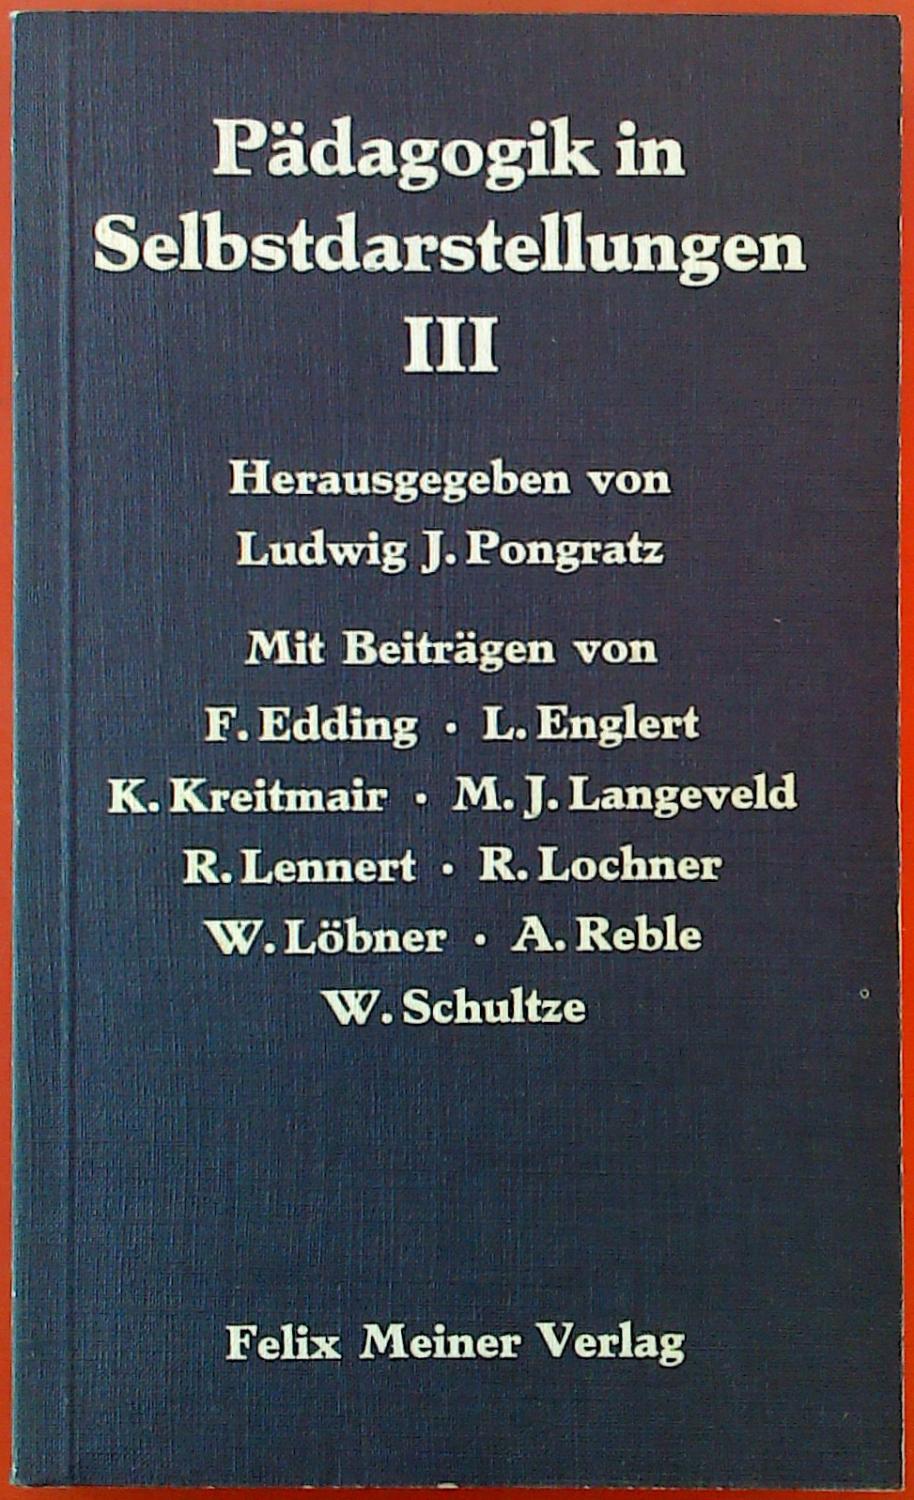 Pädagogik in Selbstdarstellungen III. - Mit Beiträgen von F. Edding - L. Englert - K. Kreitmair u. a. - Hrsg. Ludwig J. Pongratz